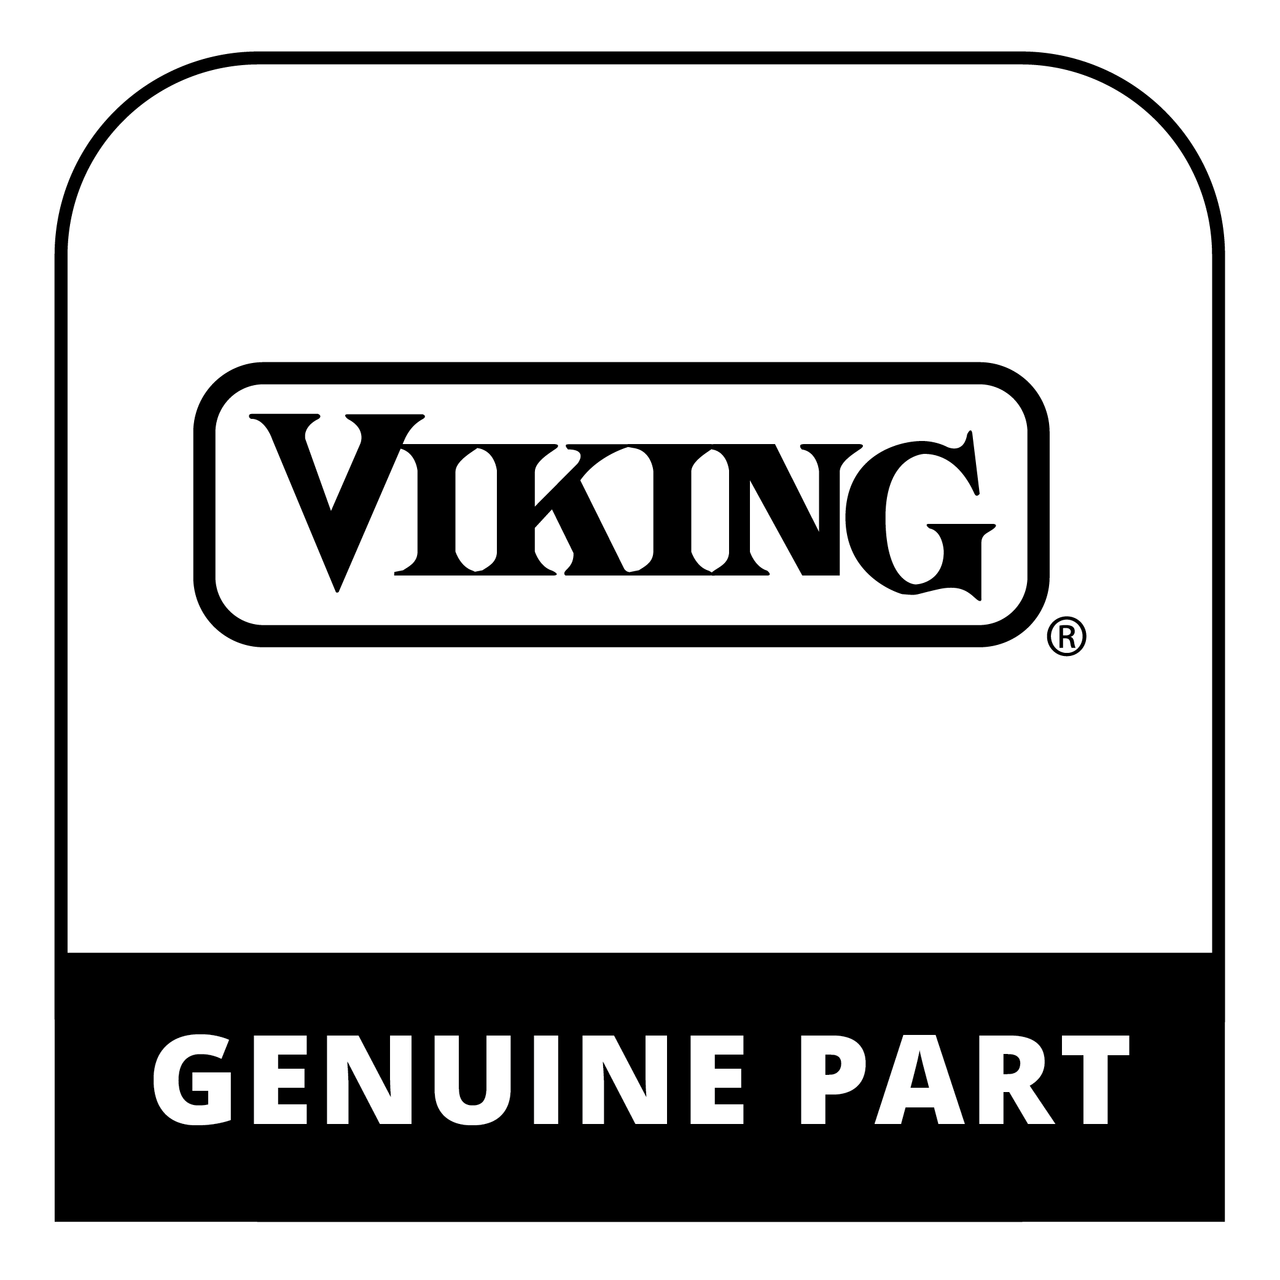 Viking FPLT-B002MRY0 - Antennaassy - Genuine Viking Part